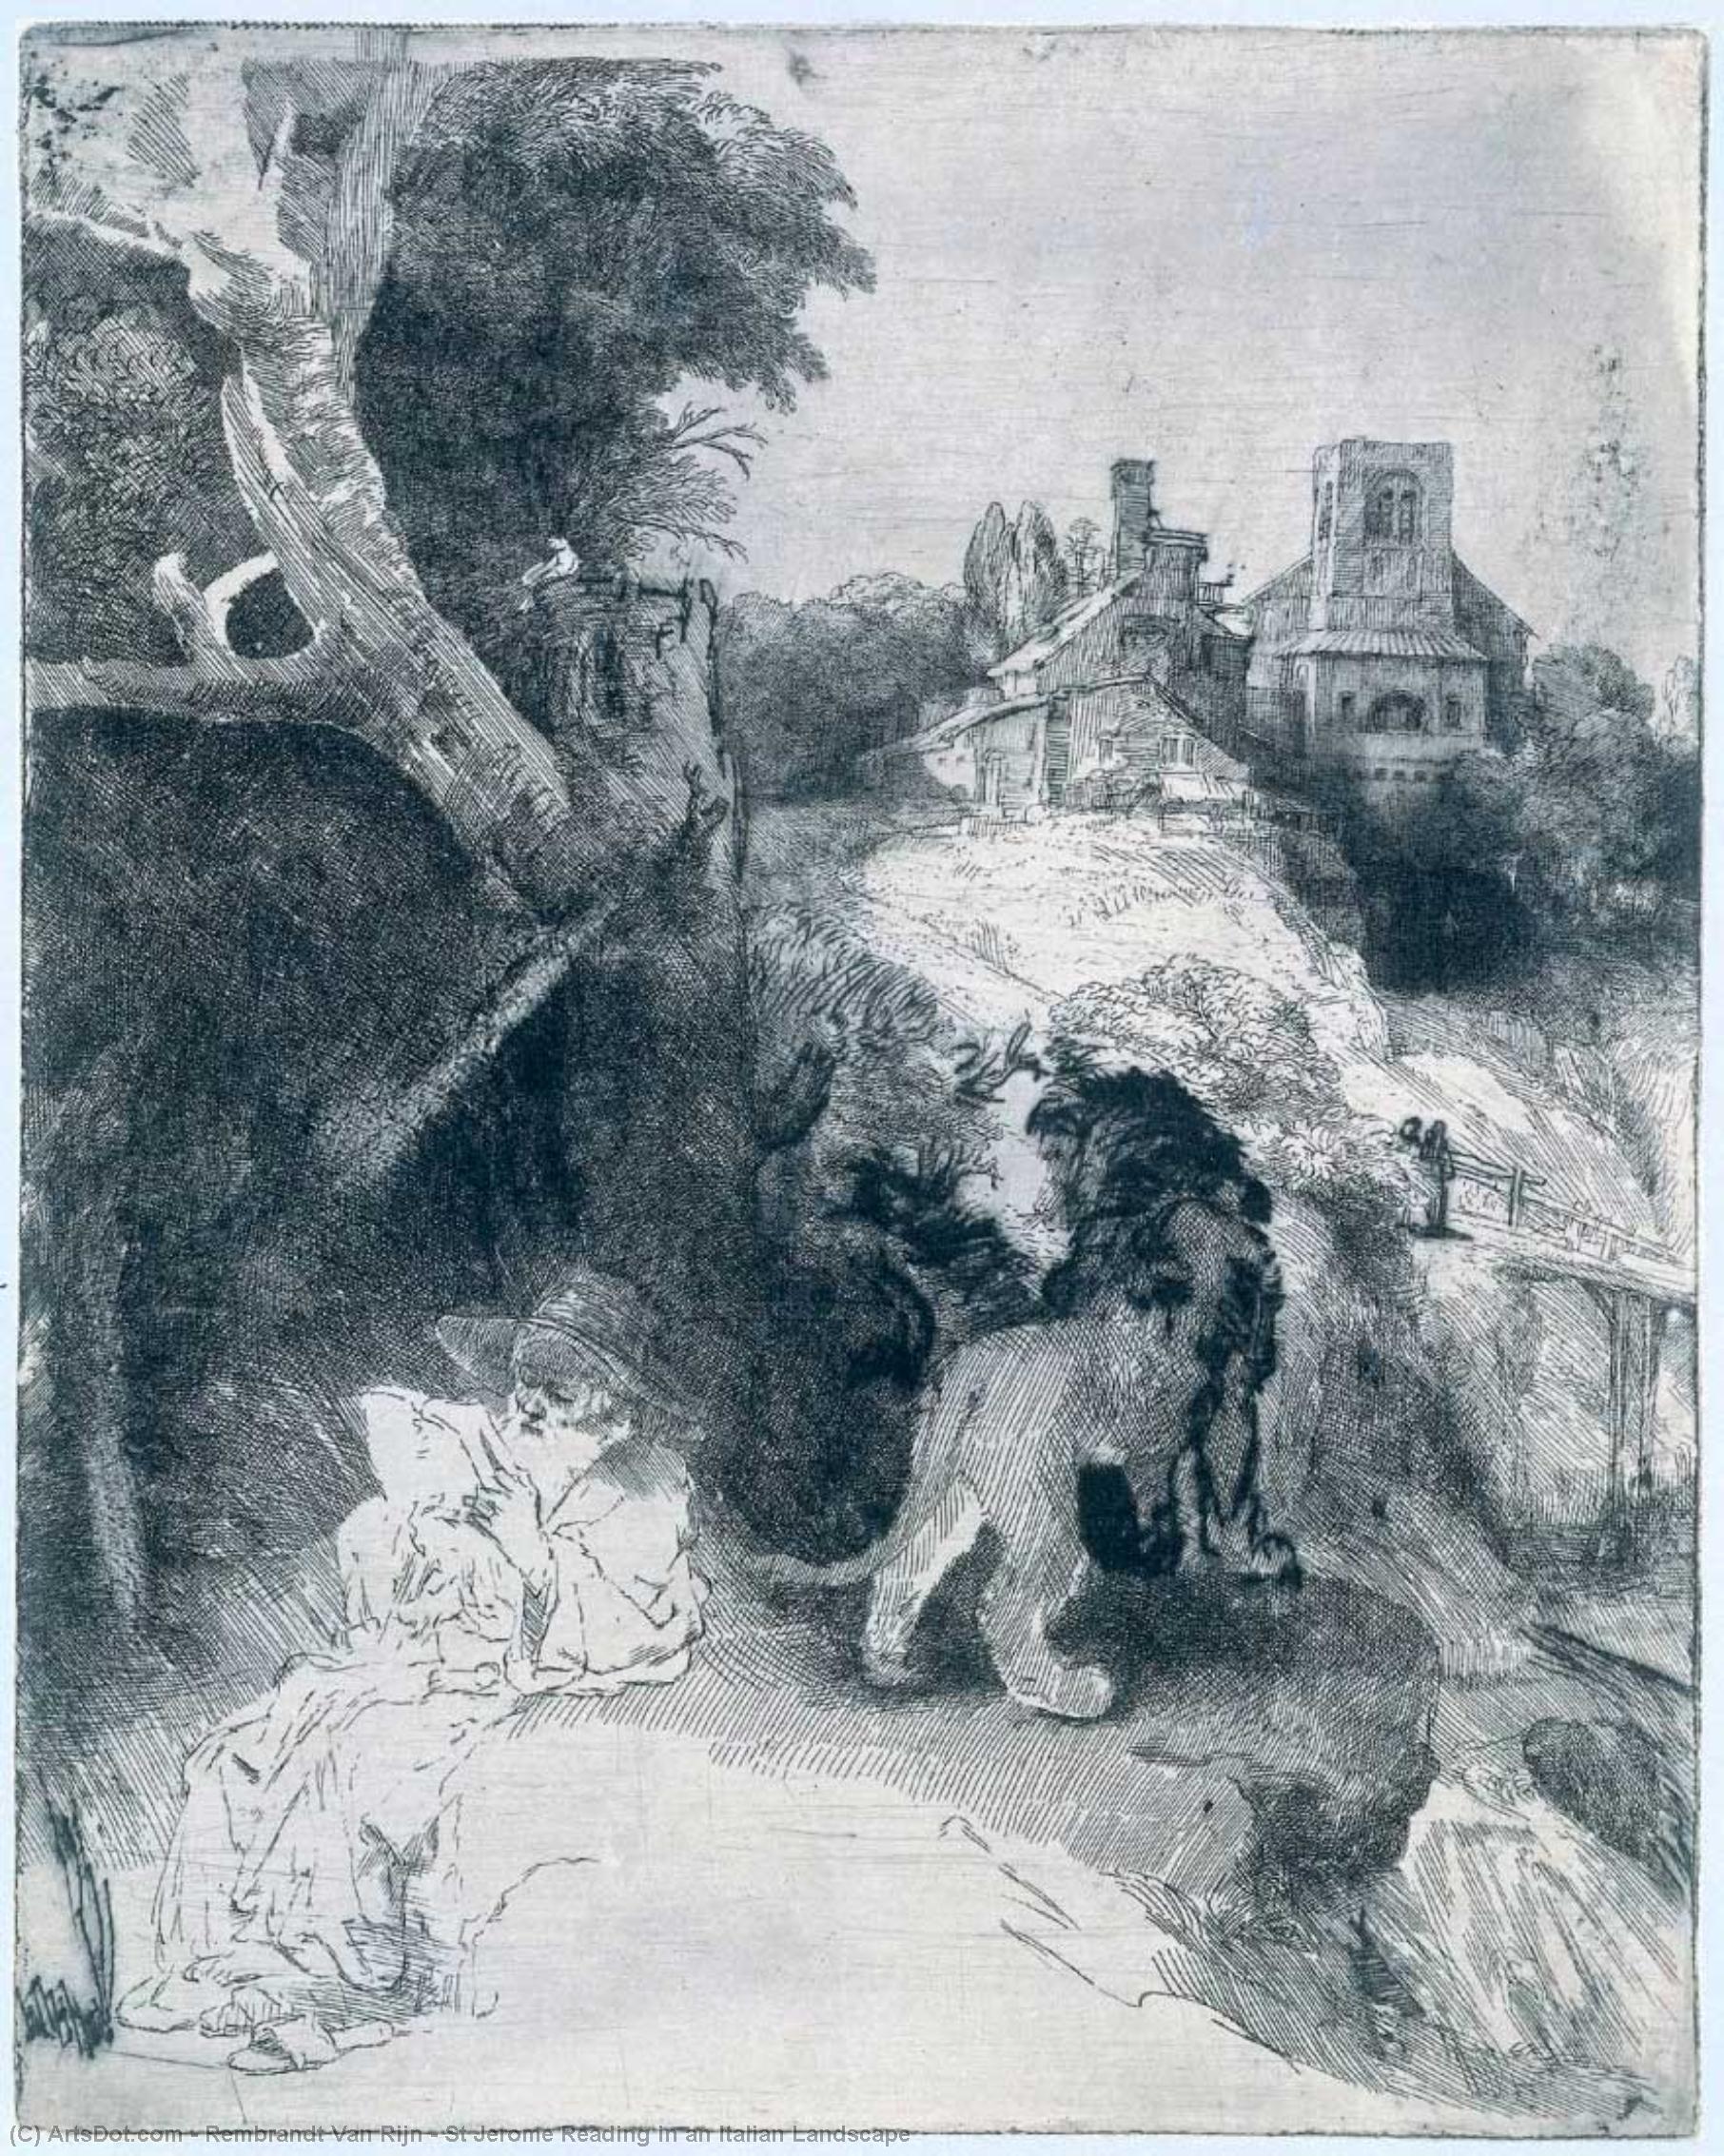 WikiOO.org - Encyclopedia of Fine Arts - Lukisan, Artwork Rembrandt Van Rijn - St Jerome Reading in an Italian Landscape